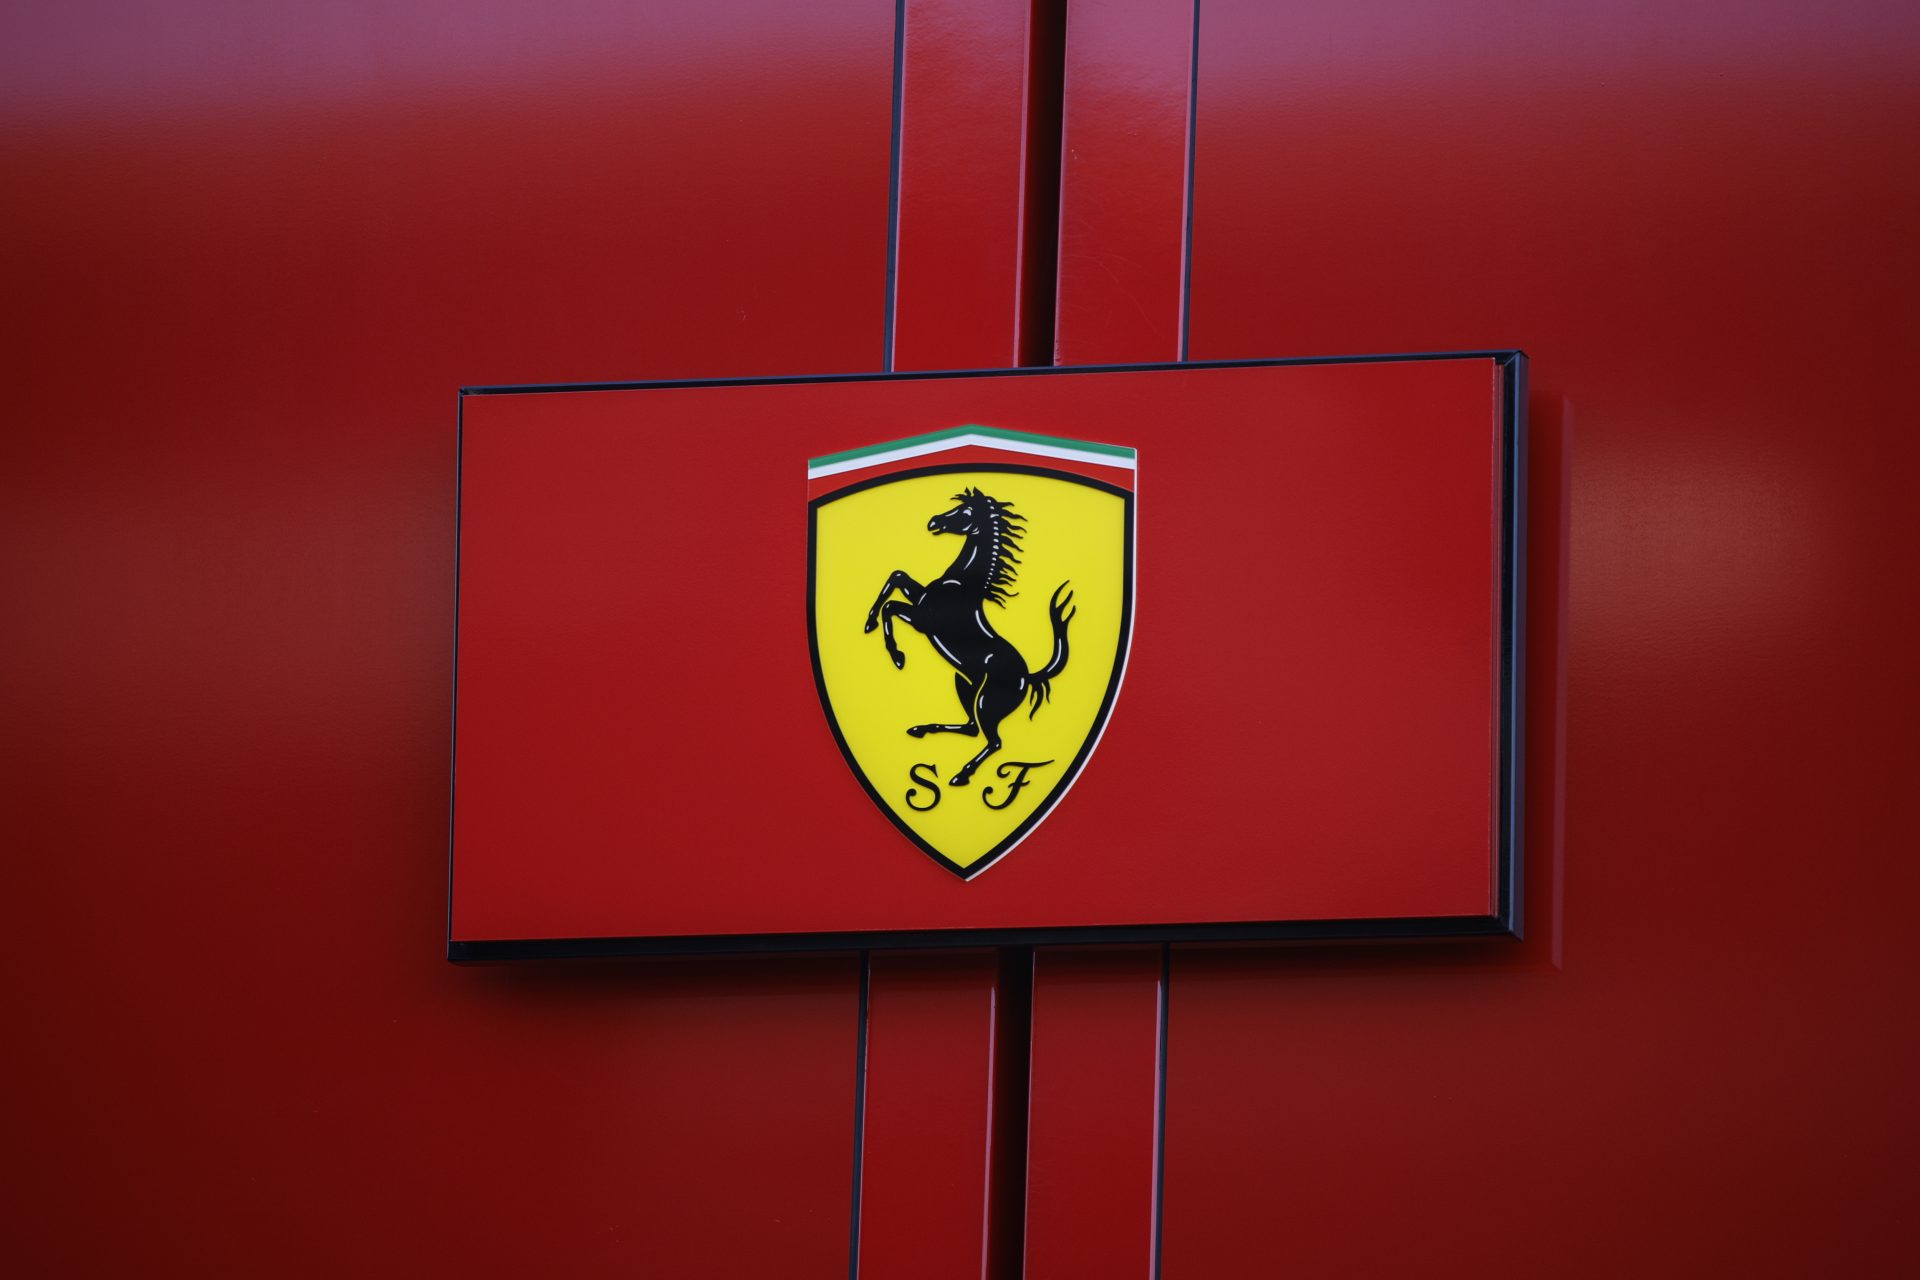 Het officiële communiqué van Ferrari